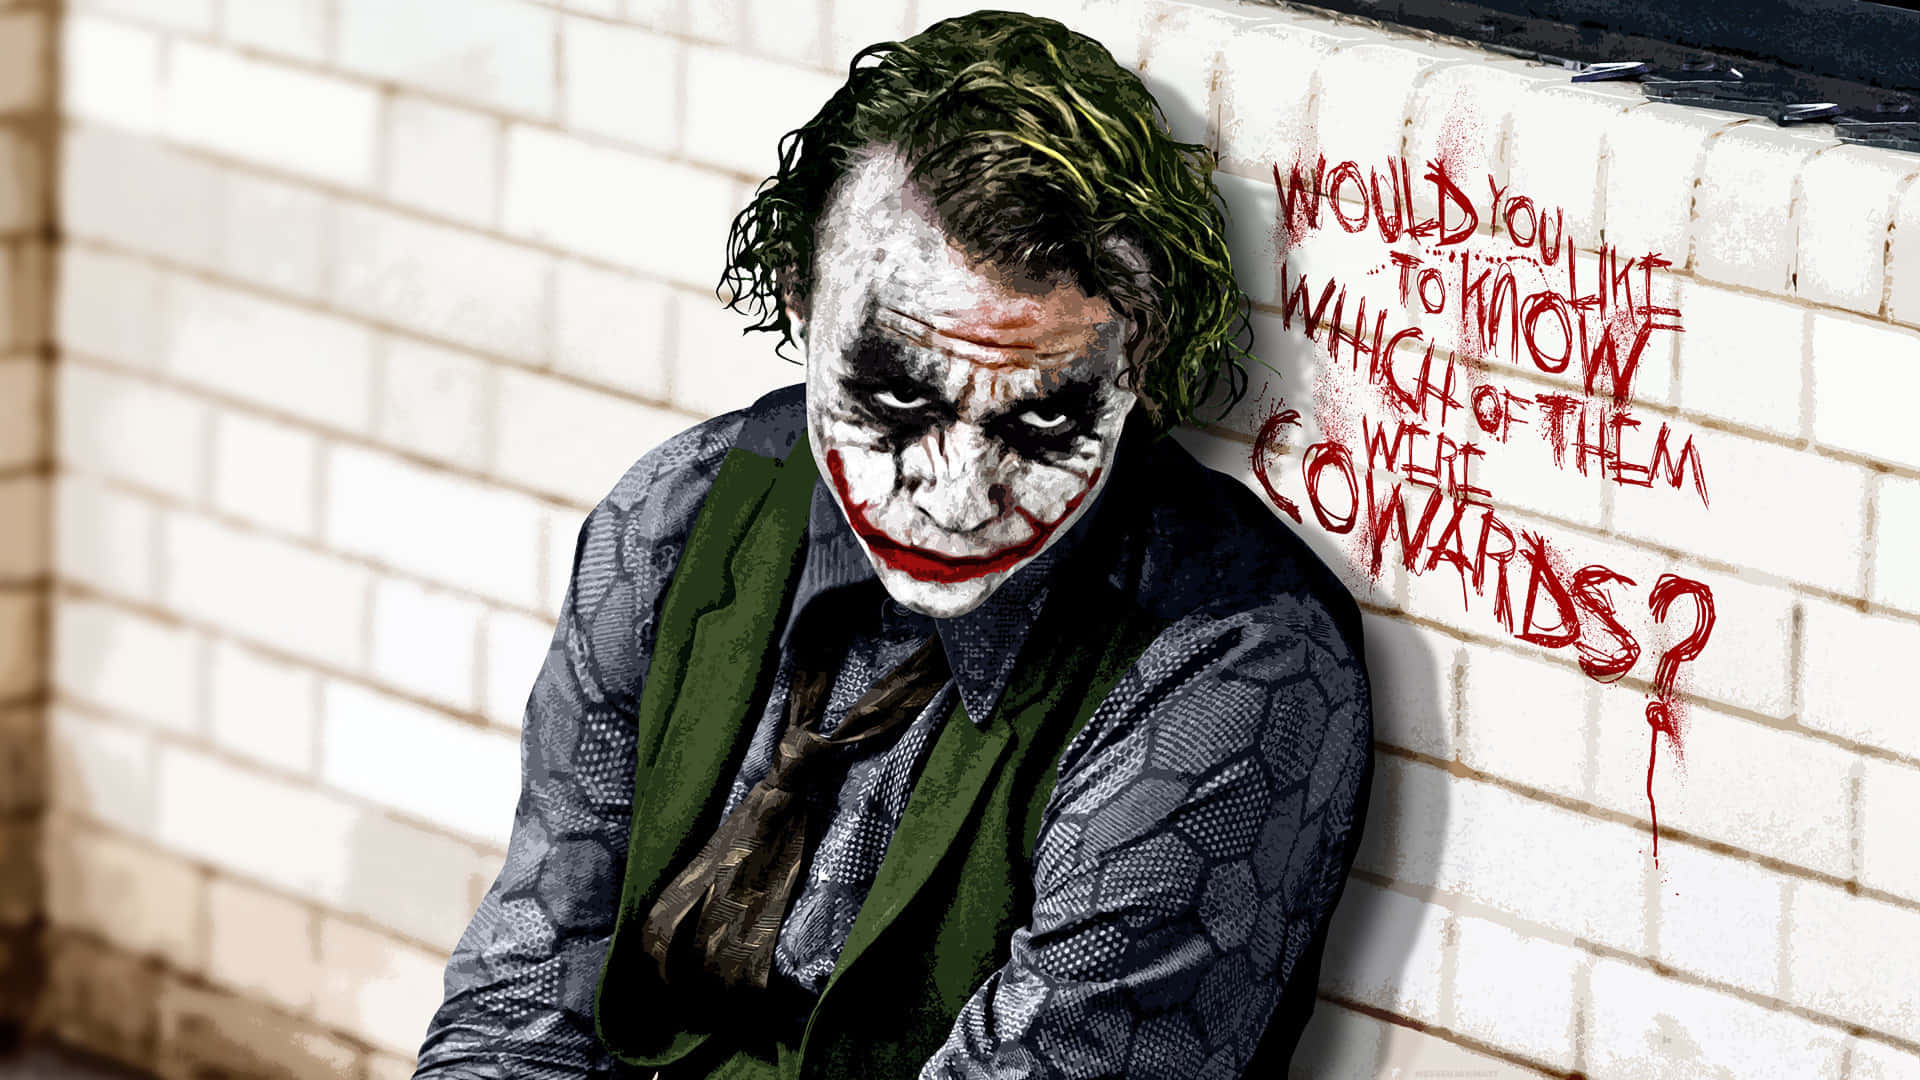 Laicónica Imagen Del Joker De La Película Ganadora De Premios En 2008 